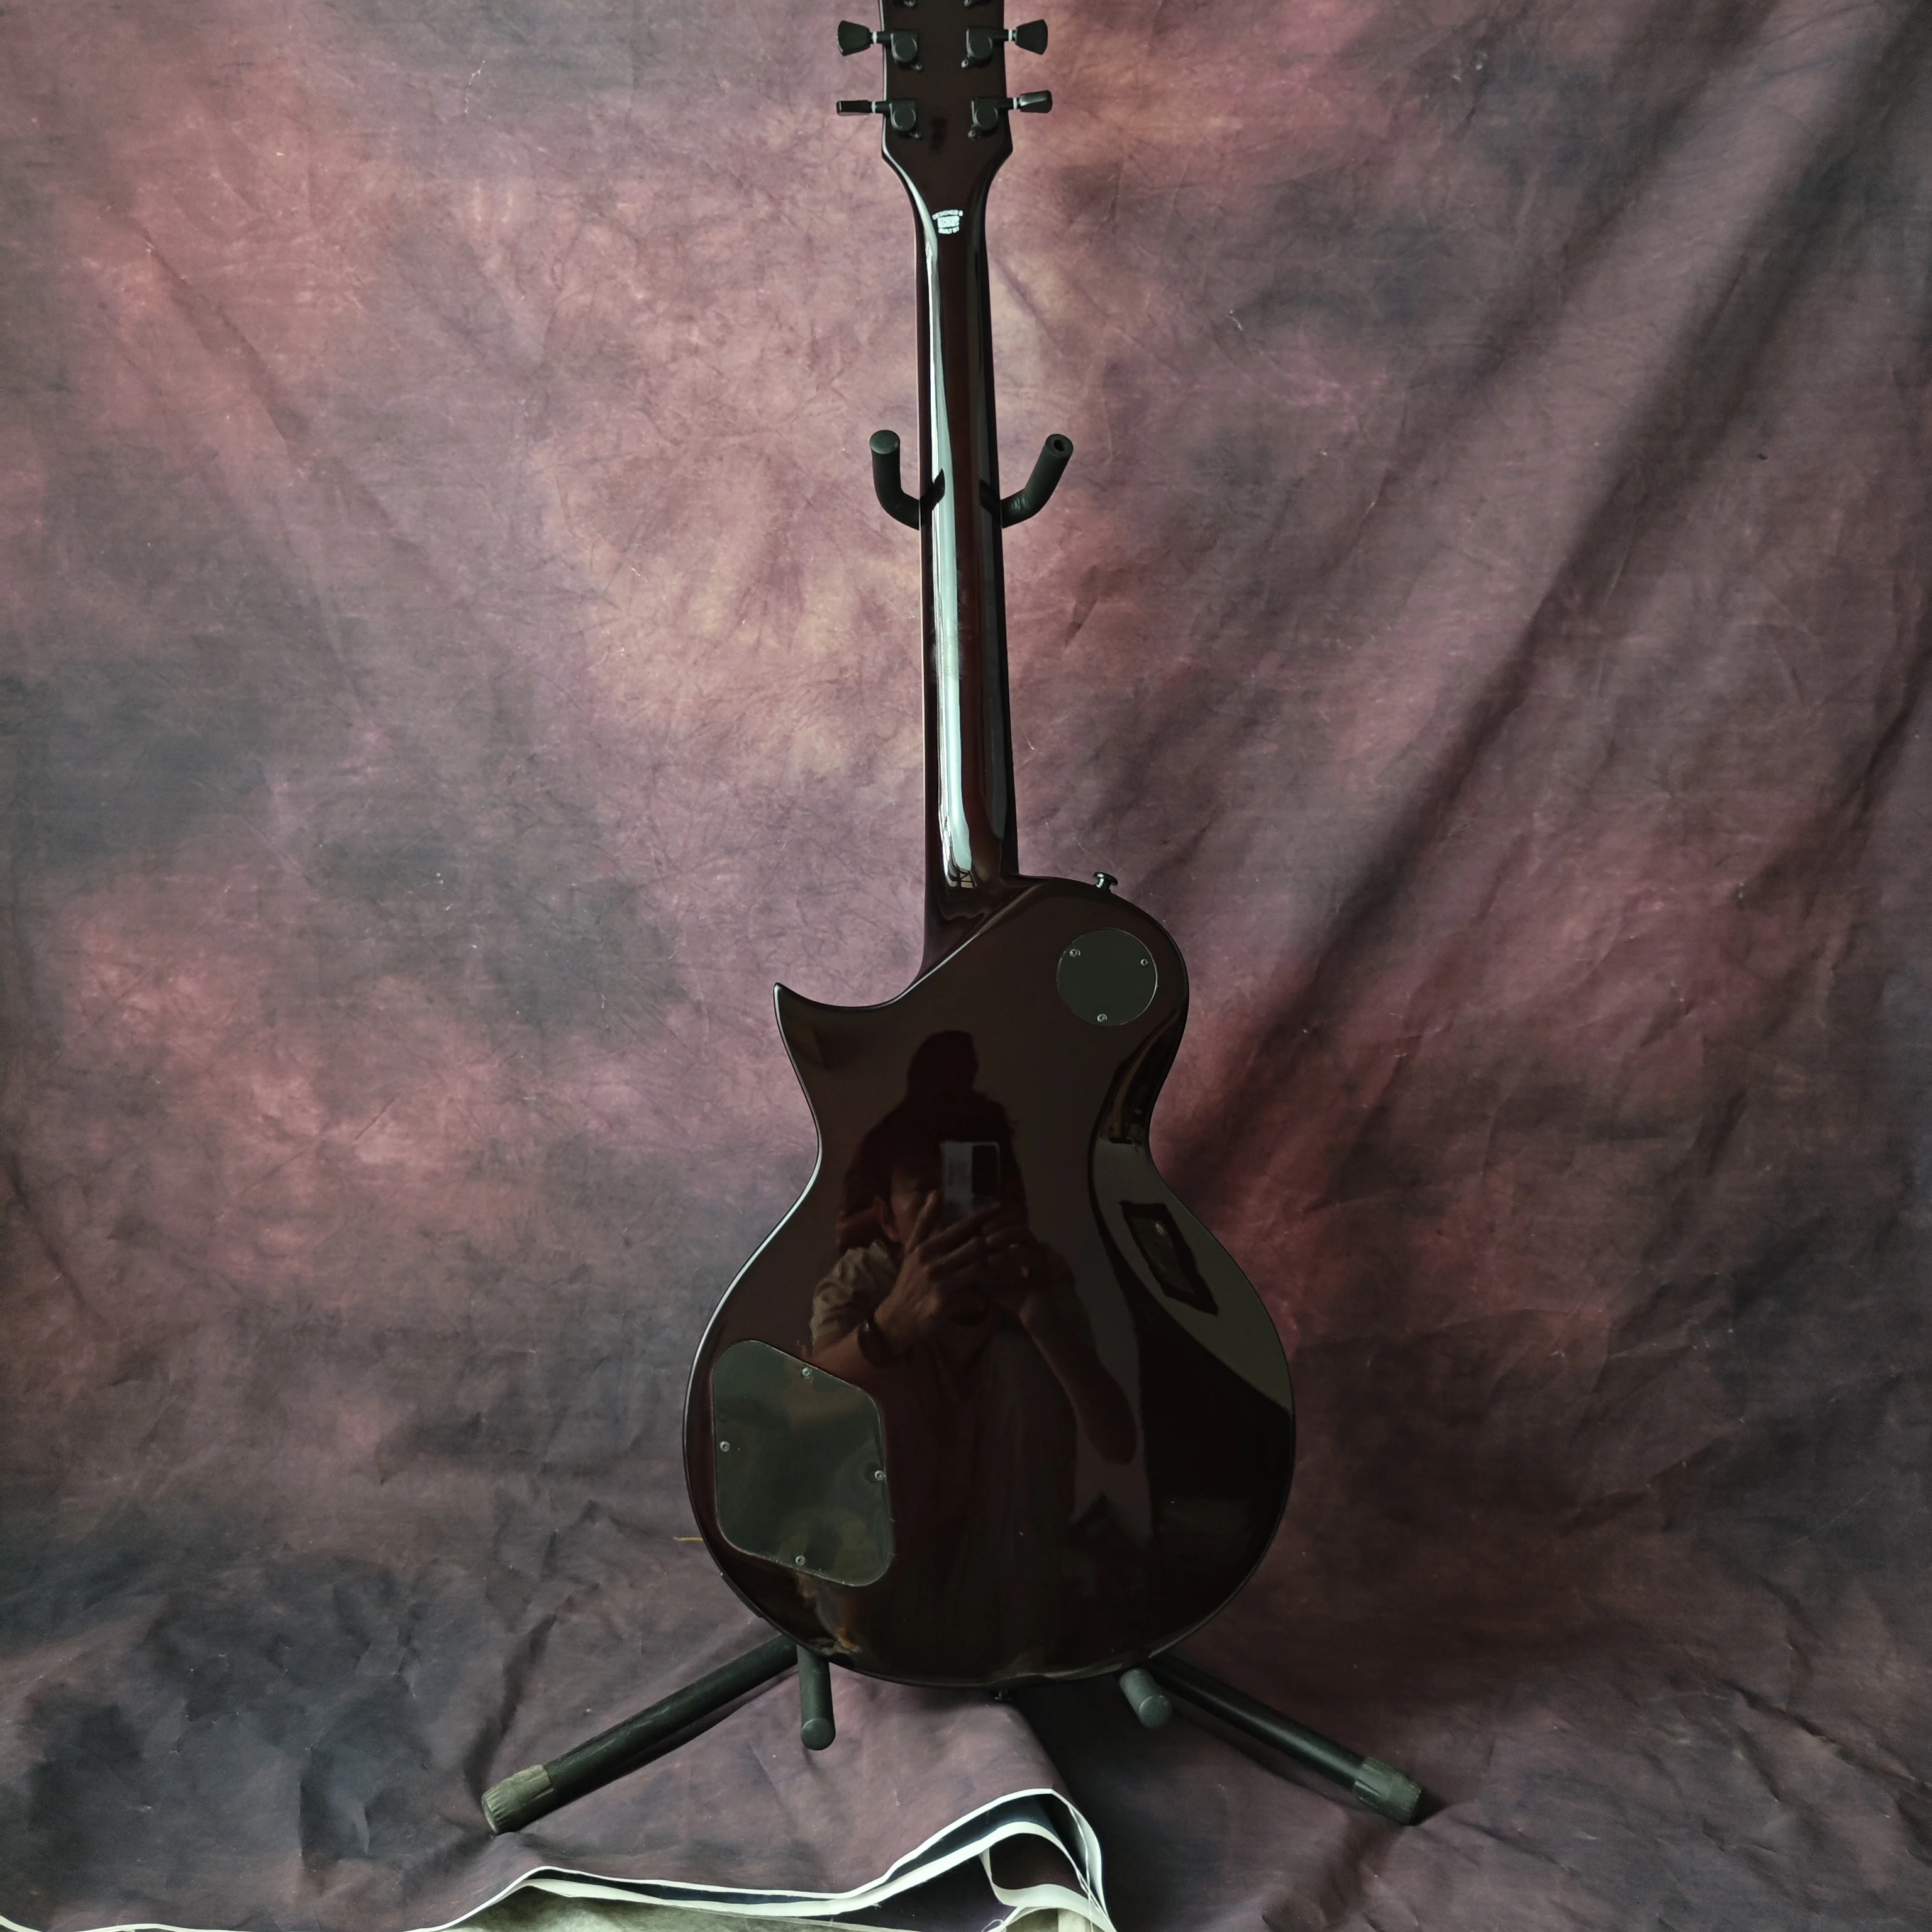 ESP vörös nagy virág elektromos gitár, bolyhos juhar top, barackvirág fa test, rózsa fa fingerboard, testreszabott gyári - 5